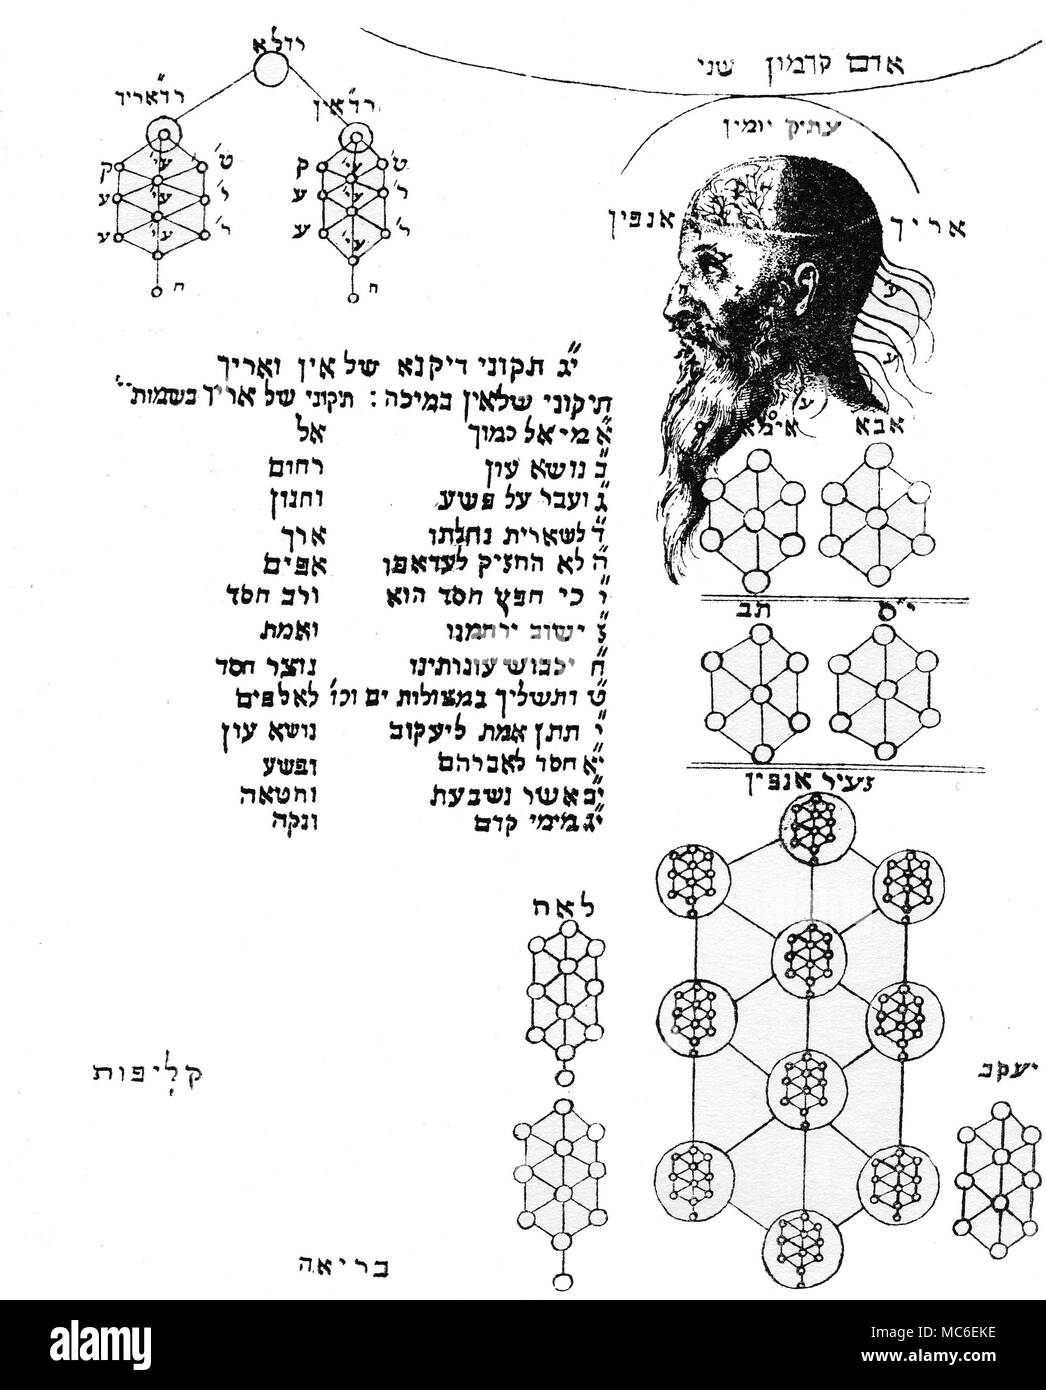 Kabbala - ADAM KADMON der Leiter der Adam Kadmon, der Ältesten, der ursprüngliche Mensch, oder der erste Adam. Es ist von dieser geistlichen Leiter (durch En-Sof erstellt), tropft der Tau, der die vielen Welten. In der Umgebung des Kopfes sind die emergent Sephiroth. Die ersten drei Sephiroth sind innerhalb der Kopf selbst gebildet: Kether, die Krone, Chokmah und Binah, die Gehirne, die Intelligenz, oder Verstehen. Dies bedeutet, dass der gesamte Rahmen der Adam Kadmon ist nichts anderes als die geistige Externalisierung der zwölf Sephiroth ist, an den Baum. Diagramm von Knorr von Rosenroth, Kabbala Denudata, Stockfoto